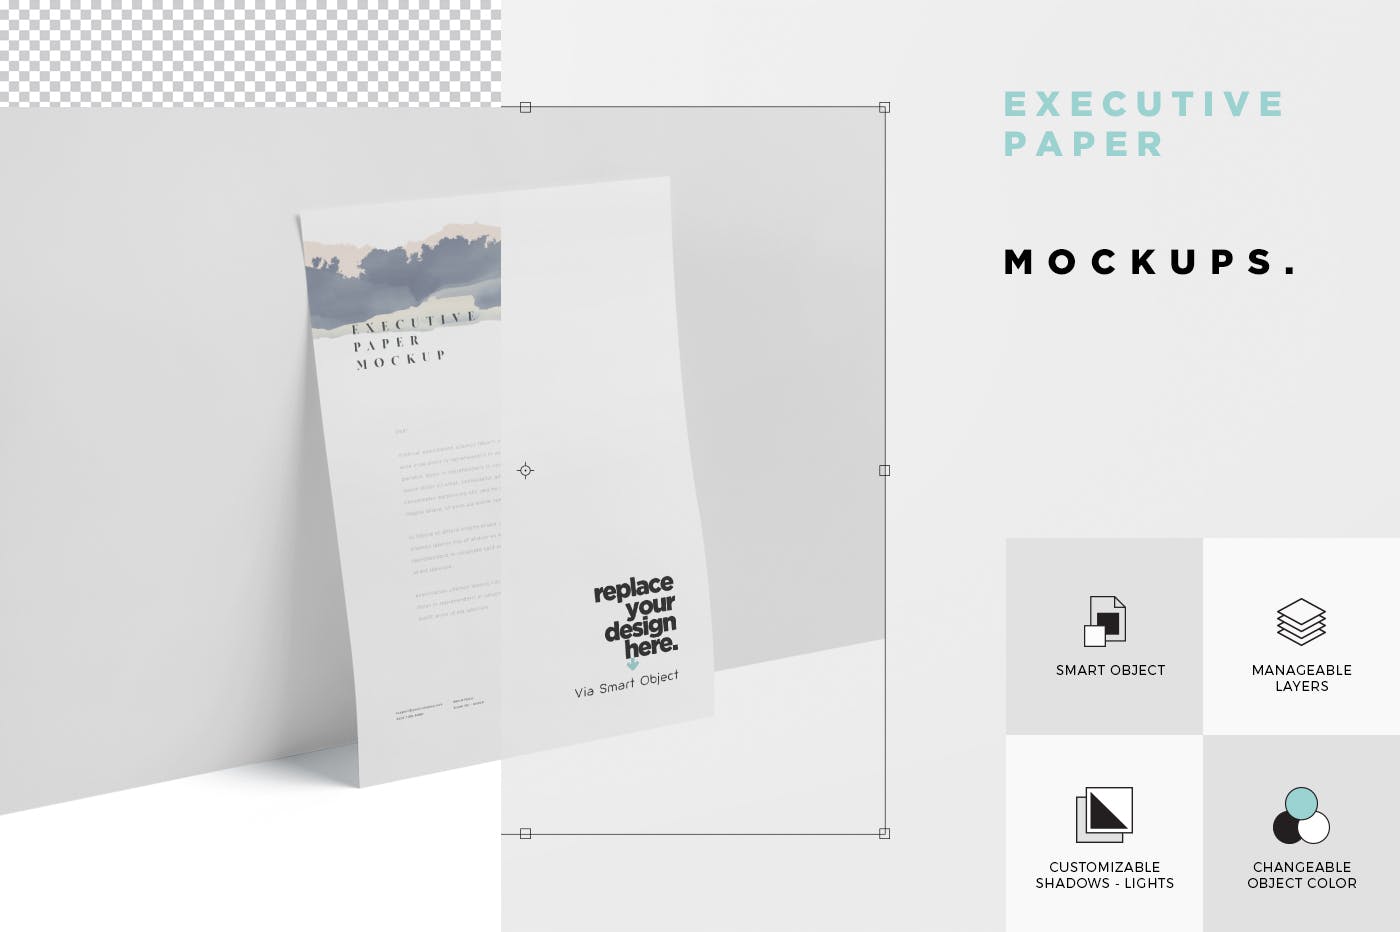 企业宣传单张设计效果图样机16图库精选 Executive Paper Mockup – 7×10 Inch Size插图(5)